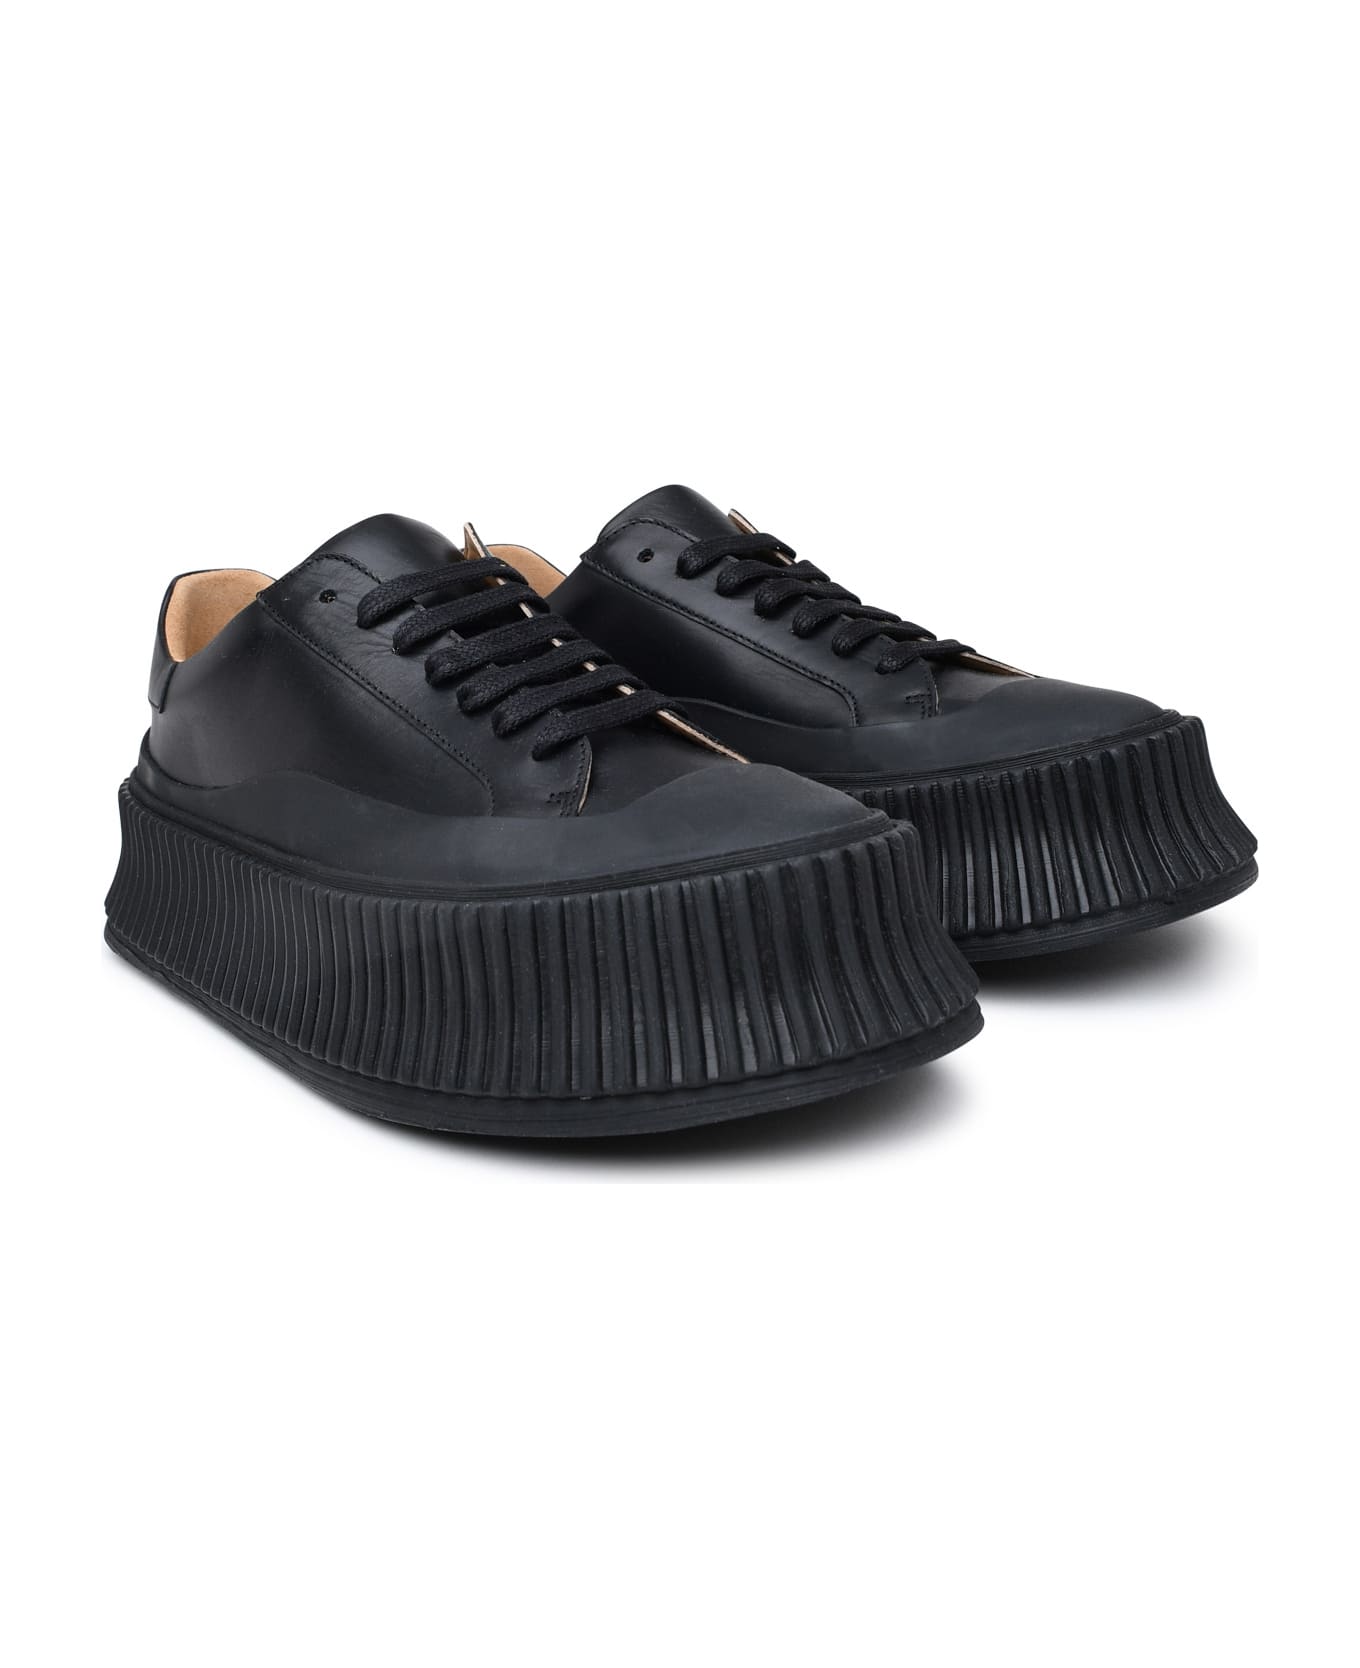 Jil Sander Black Leather Sneakers - Black